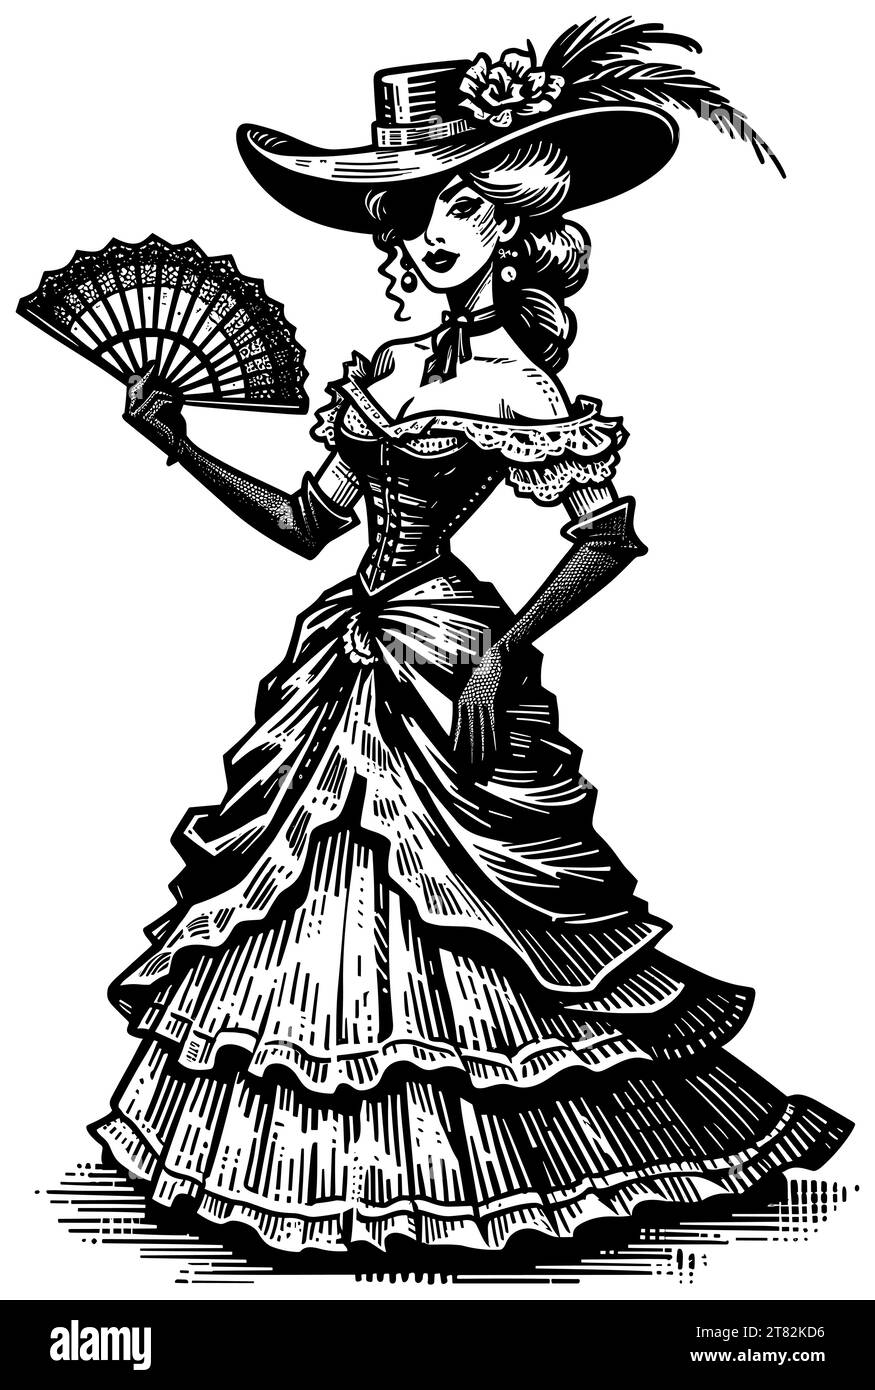 Linolschnitt-Illustration einer schönen Frau aus dem amerikanischen Wilden Westen. Stock Vektor